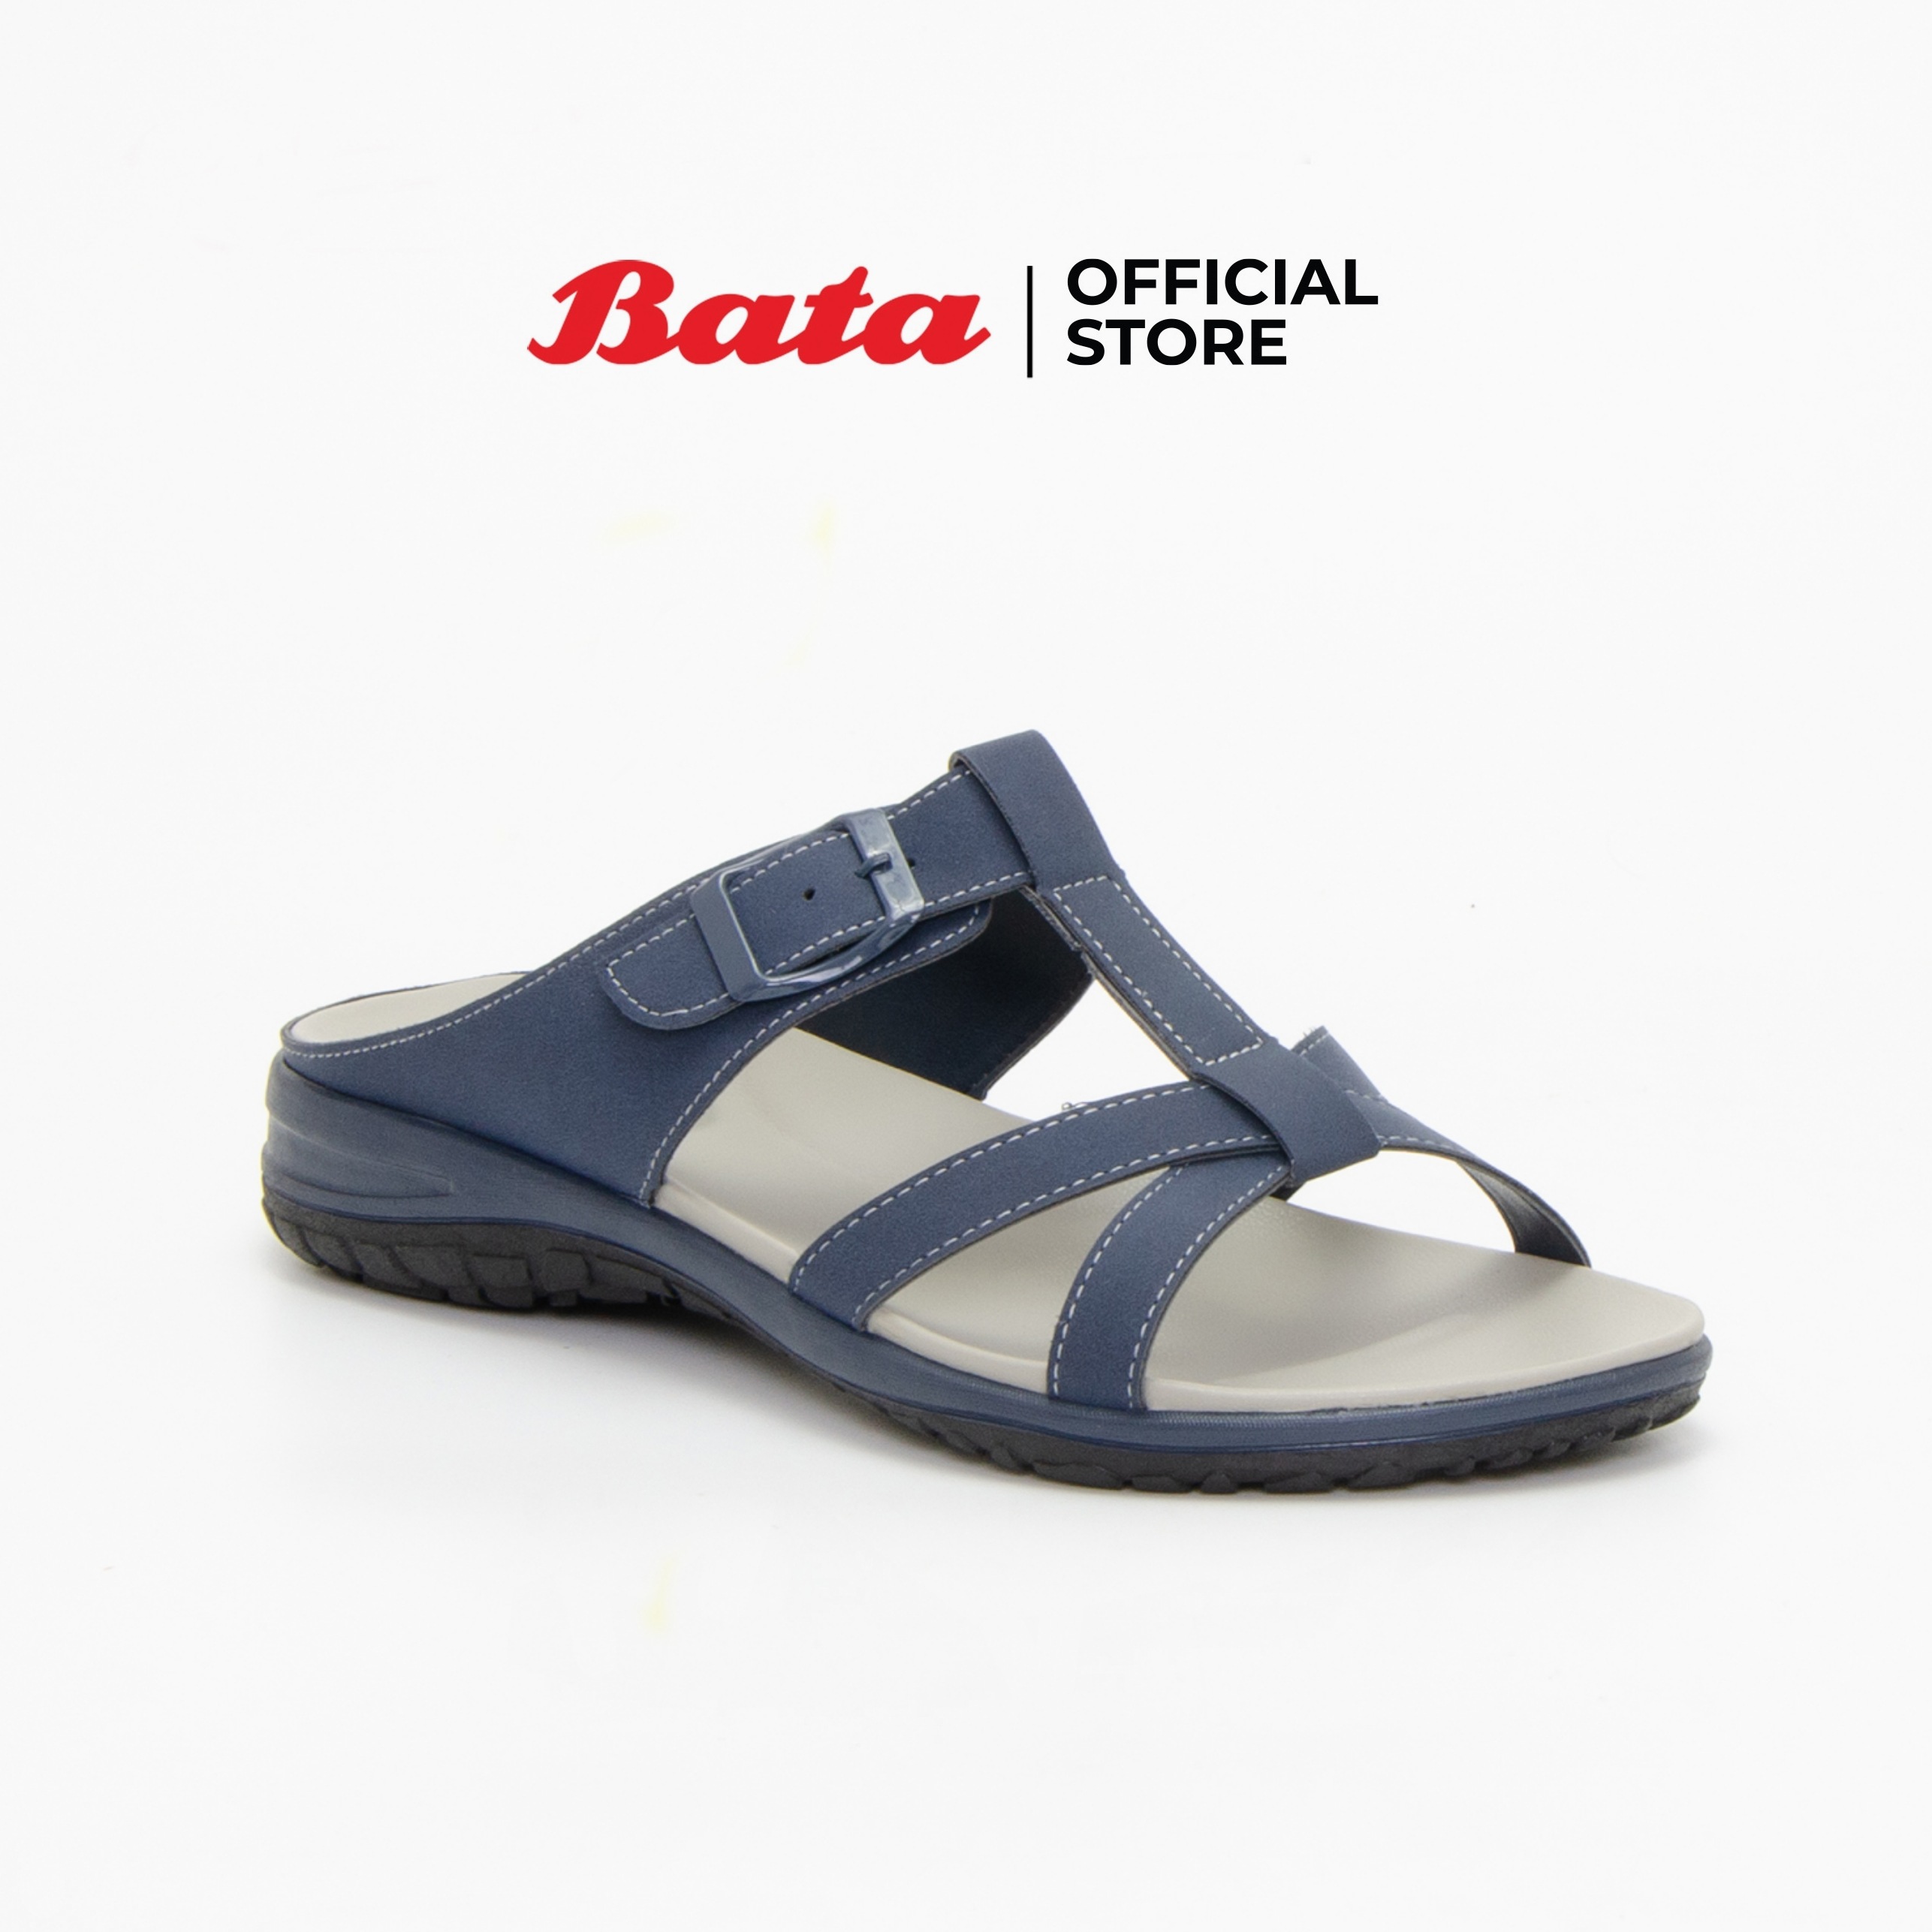 Bata Womens Mules Flats รองเท้าส้นแบนสำหรับผู้หญิง รุ่น Gade สีน้ำเงิน 6619662. 